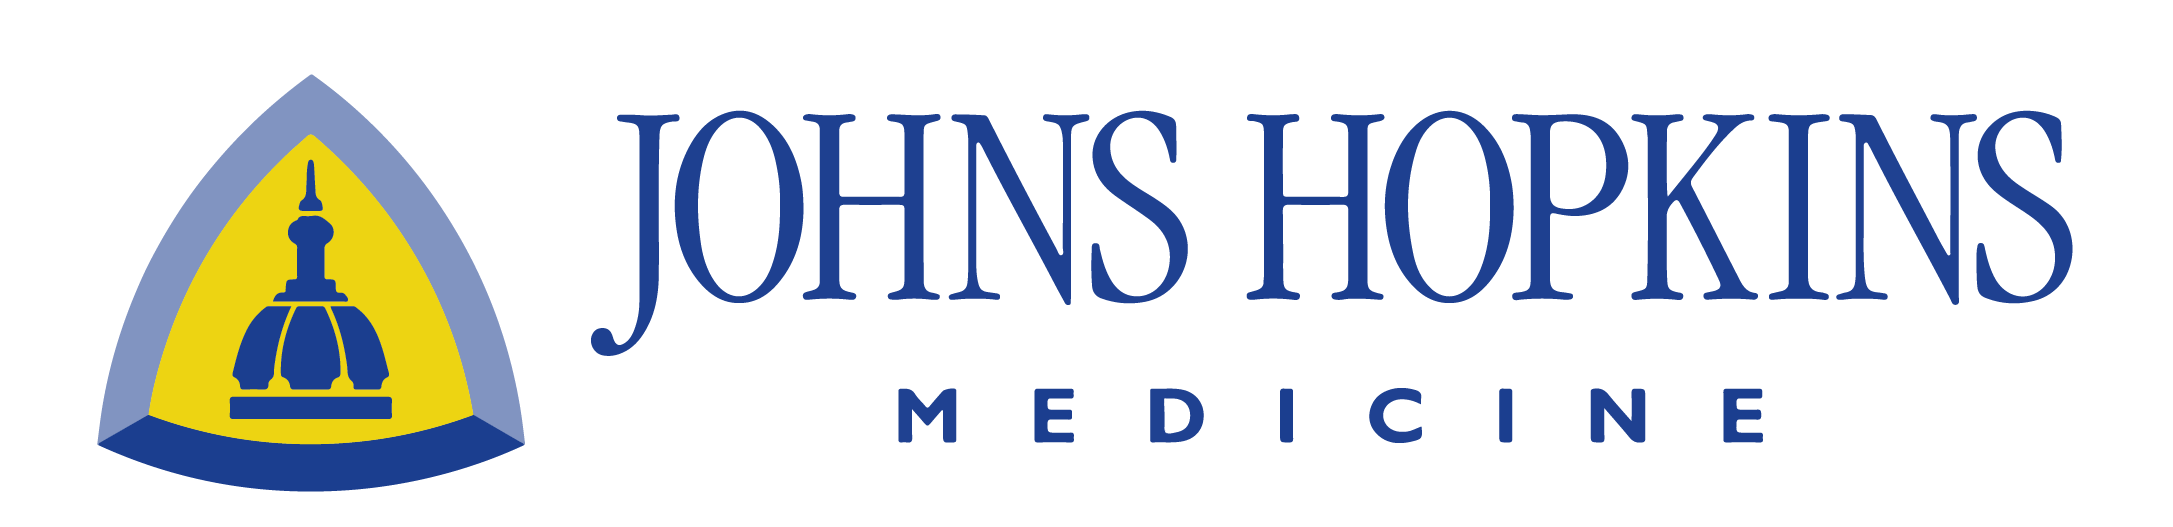 MedHacks - The Premier Medical Hackathon at Johns Hopkins University